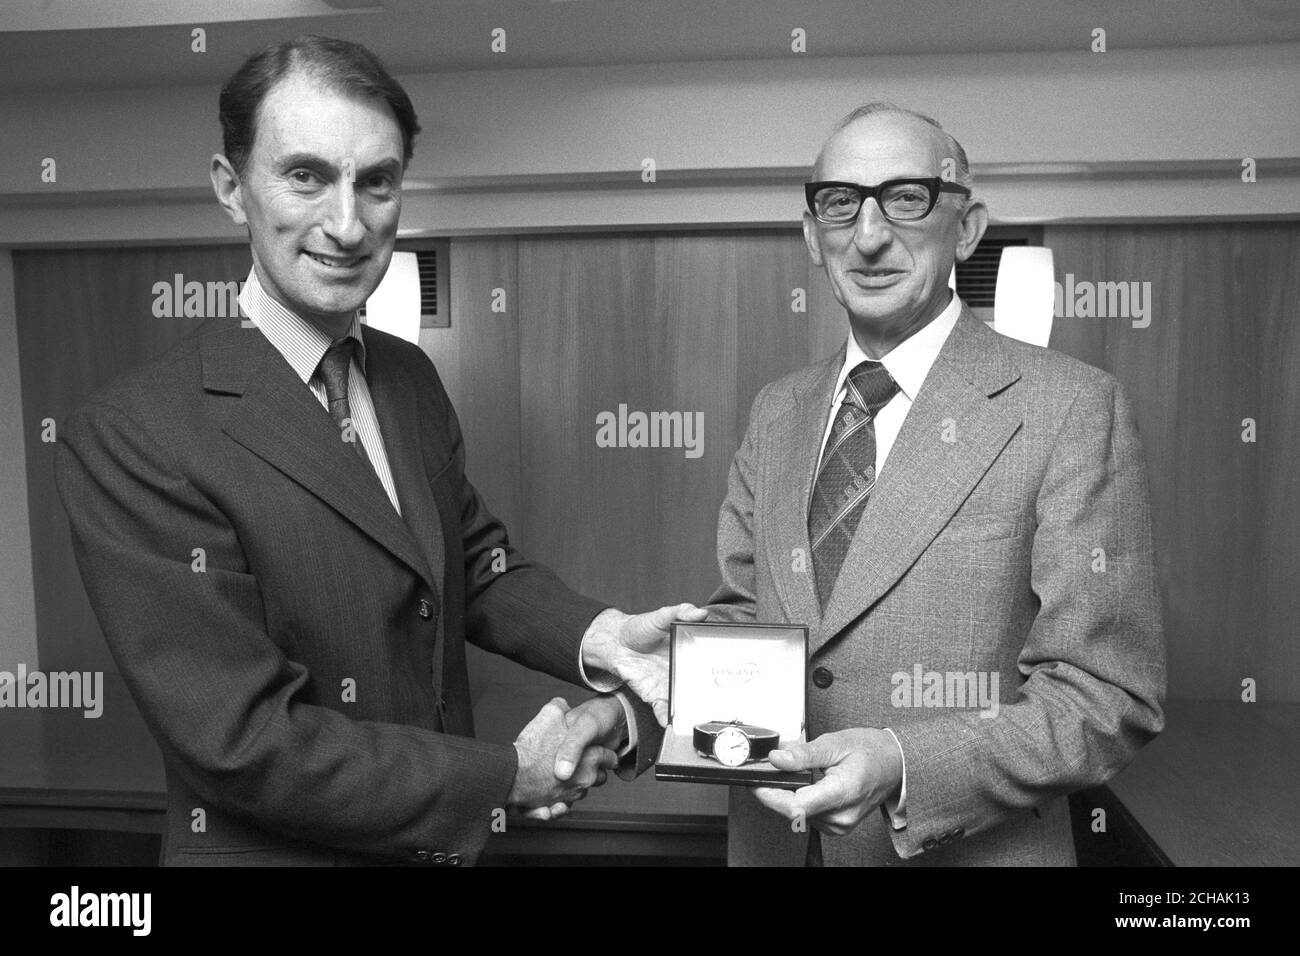 Ian Yates présente une montre à Sidney Nelson de PA Features, en reconnaissance du service de longue durée. Banque D'Images